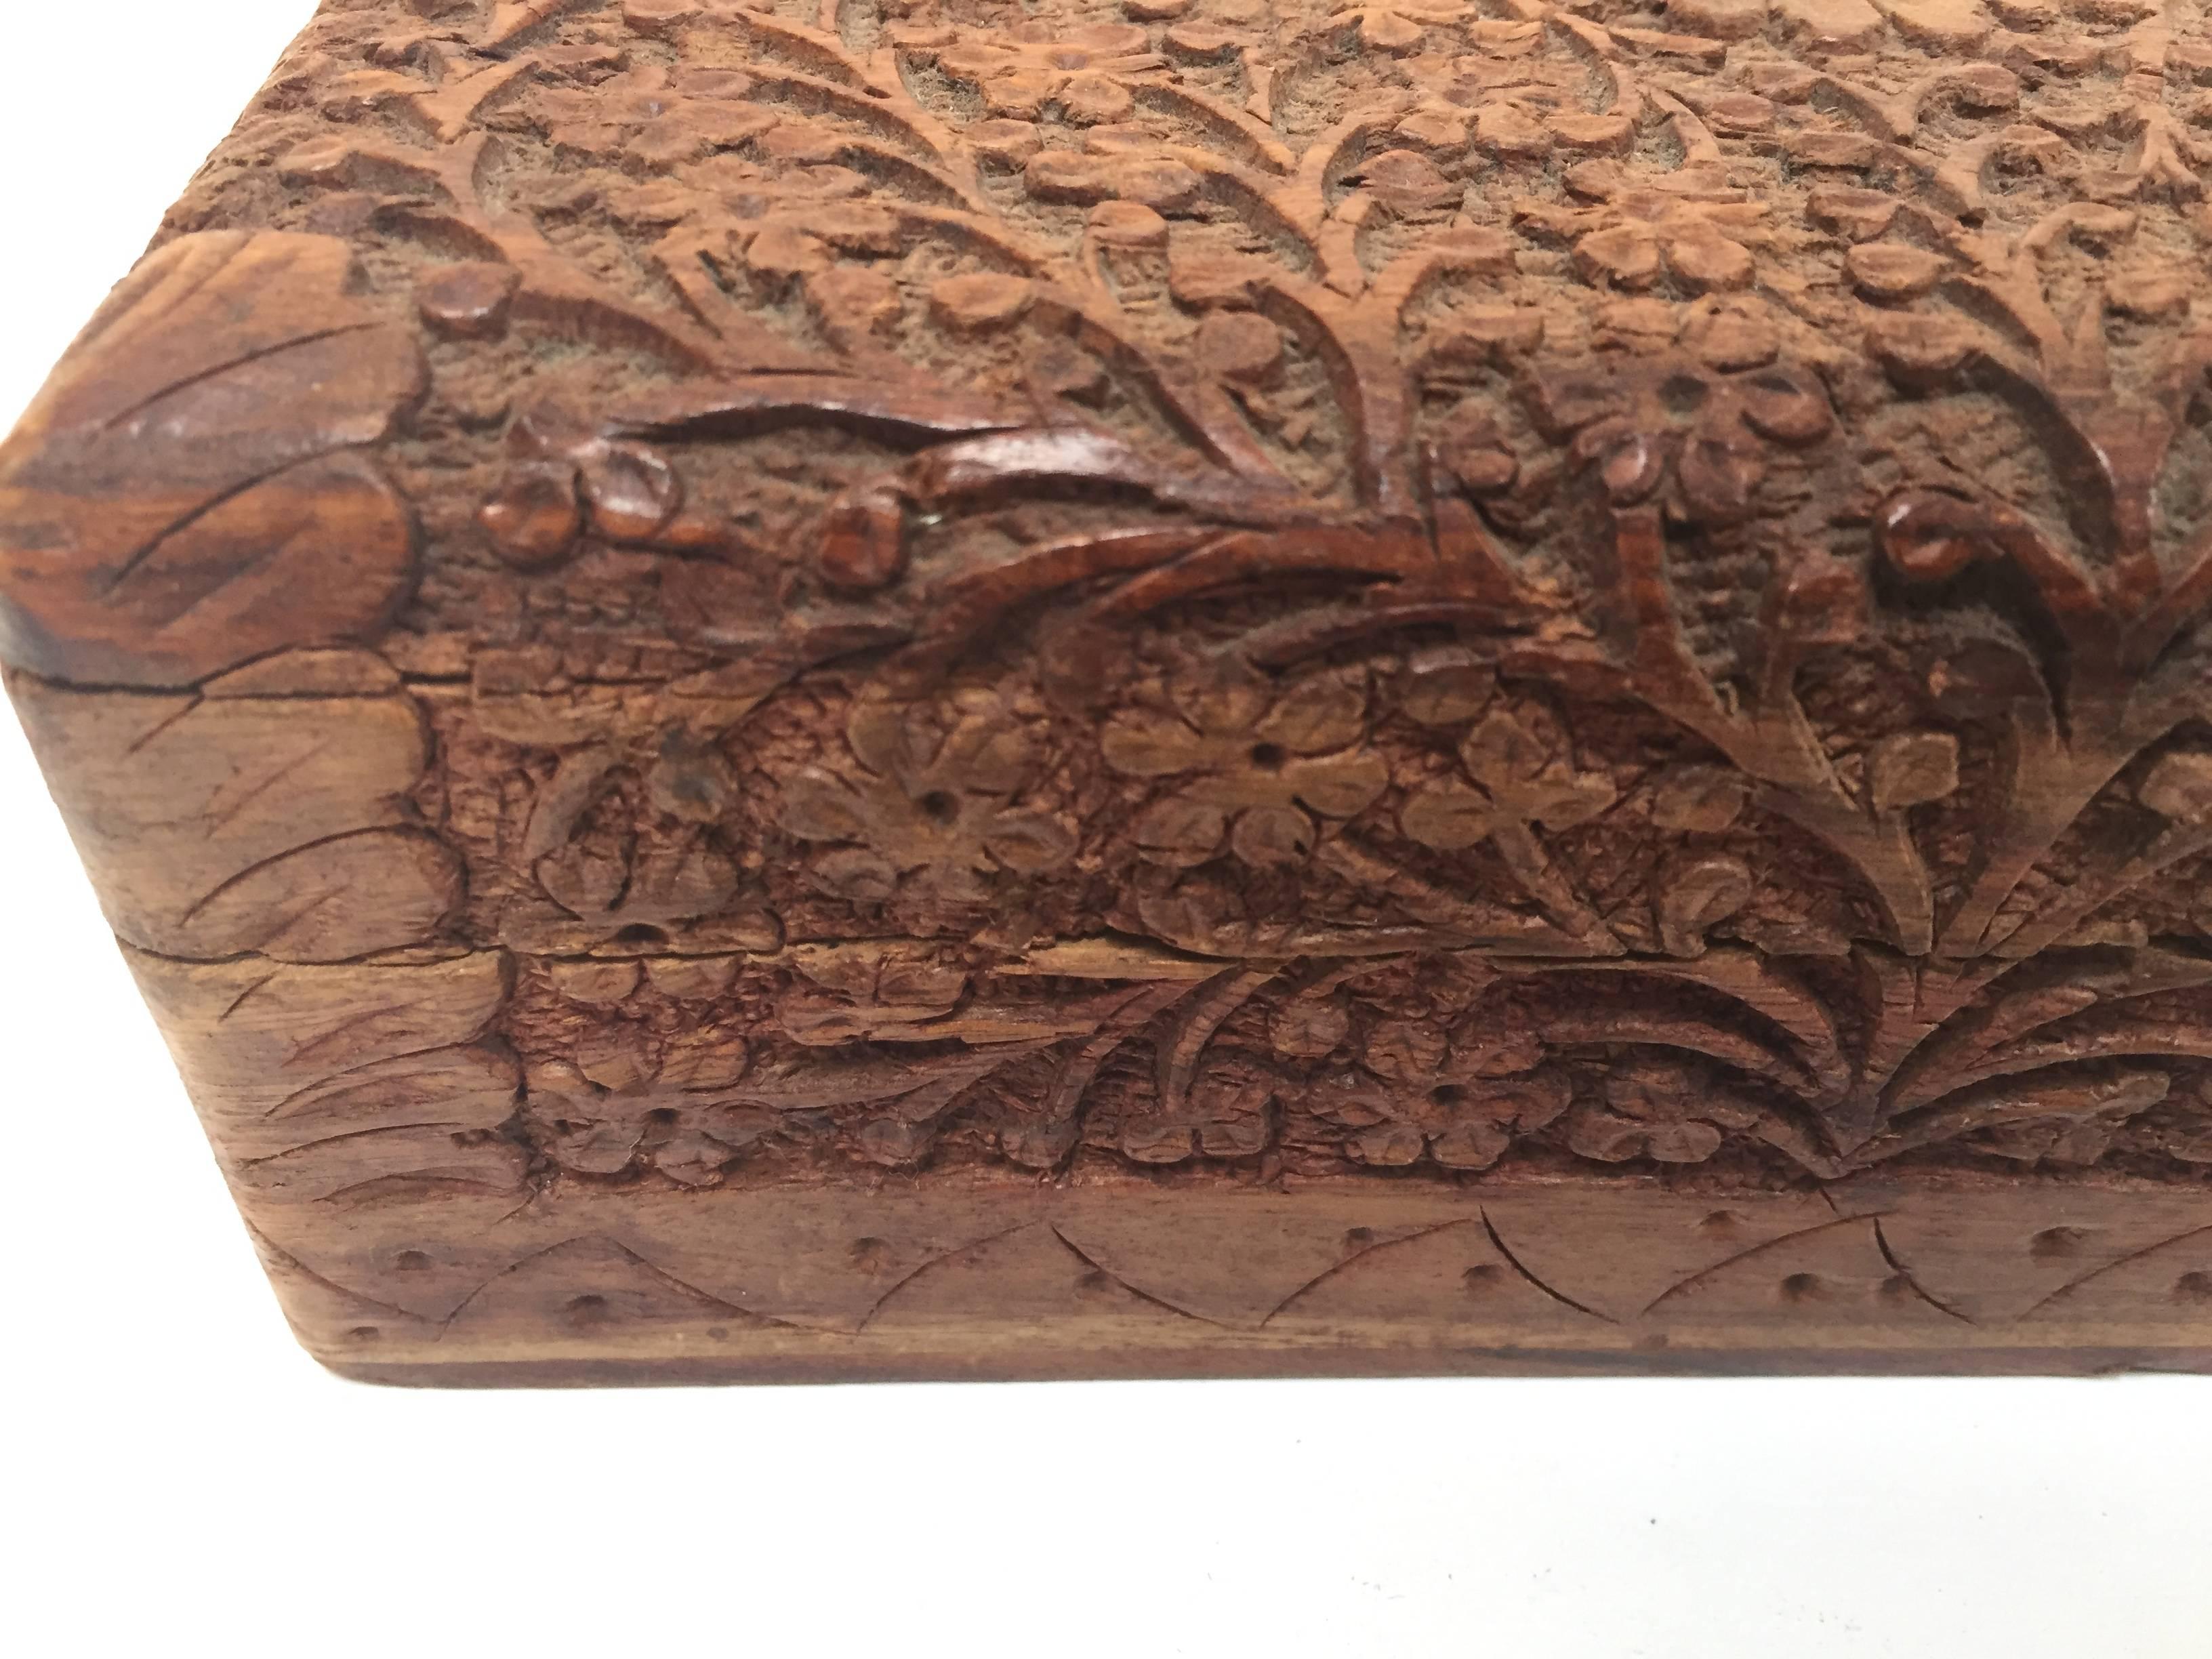 Handgeschnitzte Anglo-Raj-Holzkiste aus dem frühen 20. Jahrhundert, reich verziert mit Arabesken und floralen Schnitzereien.
Scharnierdeckel mit flacher Reliefschnitzerei, innen mit rostrotem Samt ausgekleidet.
Schöne handgefertigte